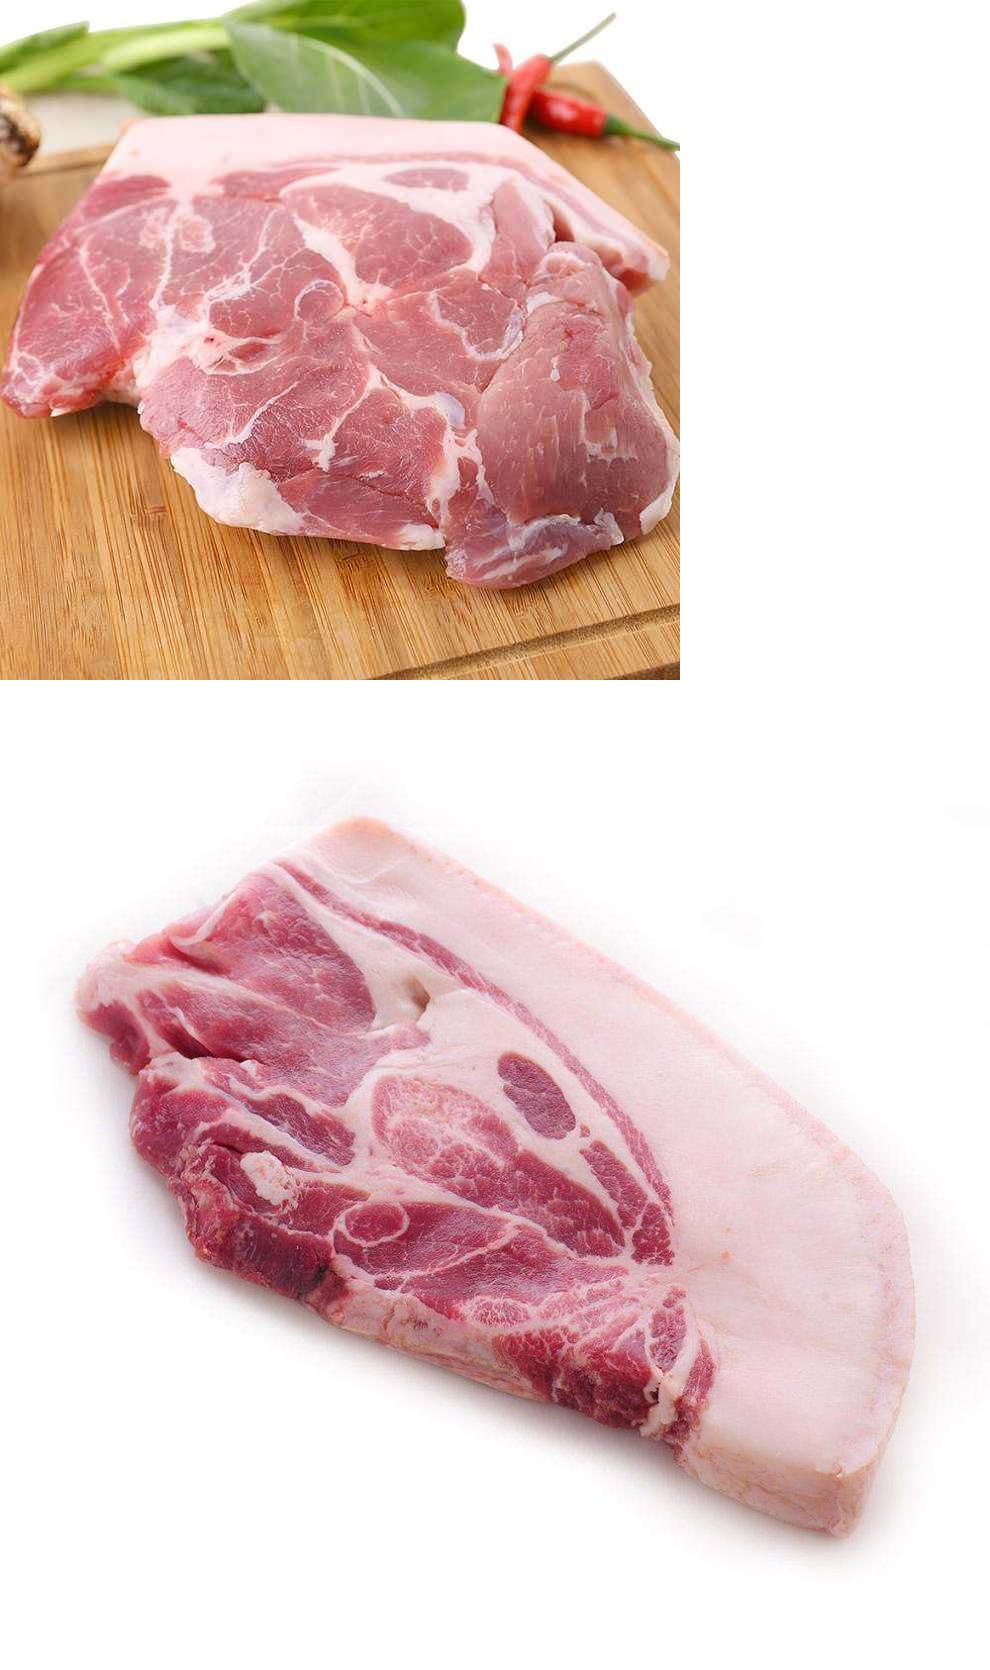 【有检疫证附调料】新鲜猪梅花肉2斤 猪肉 生鲜